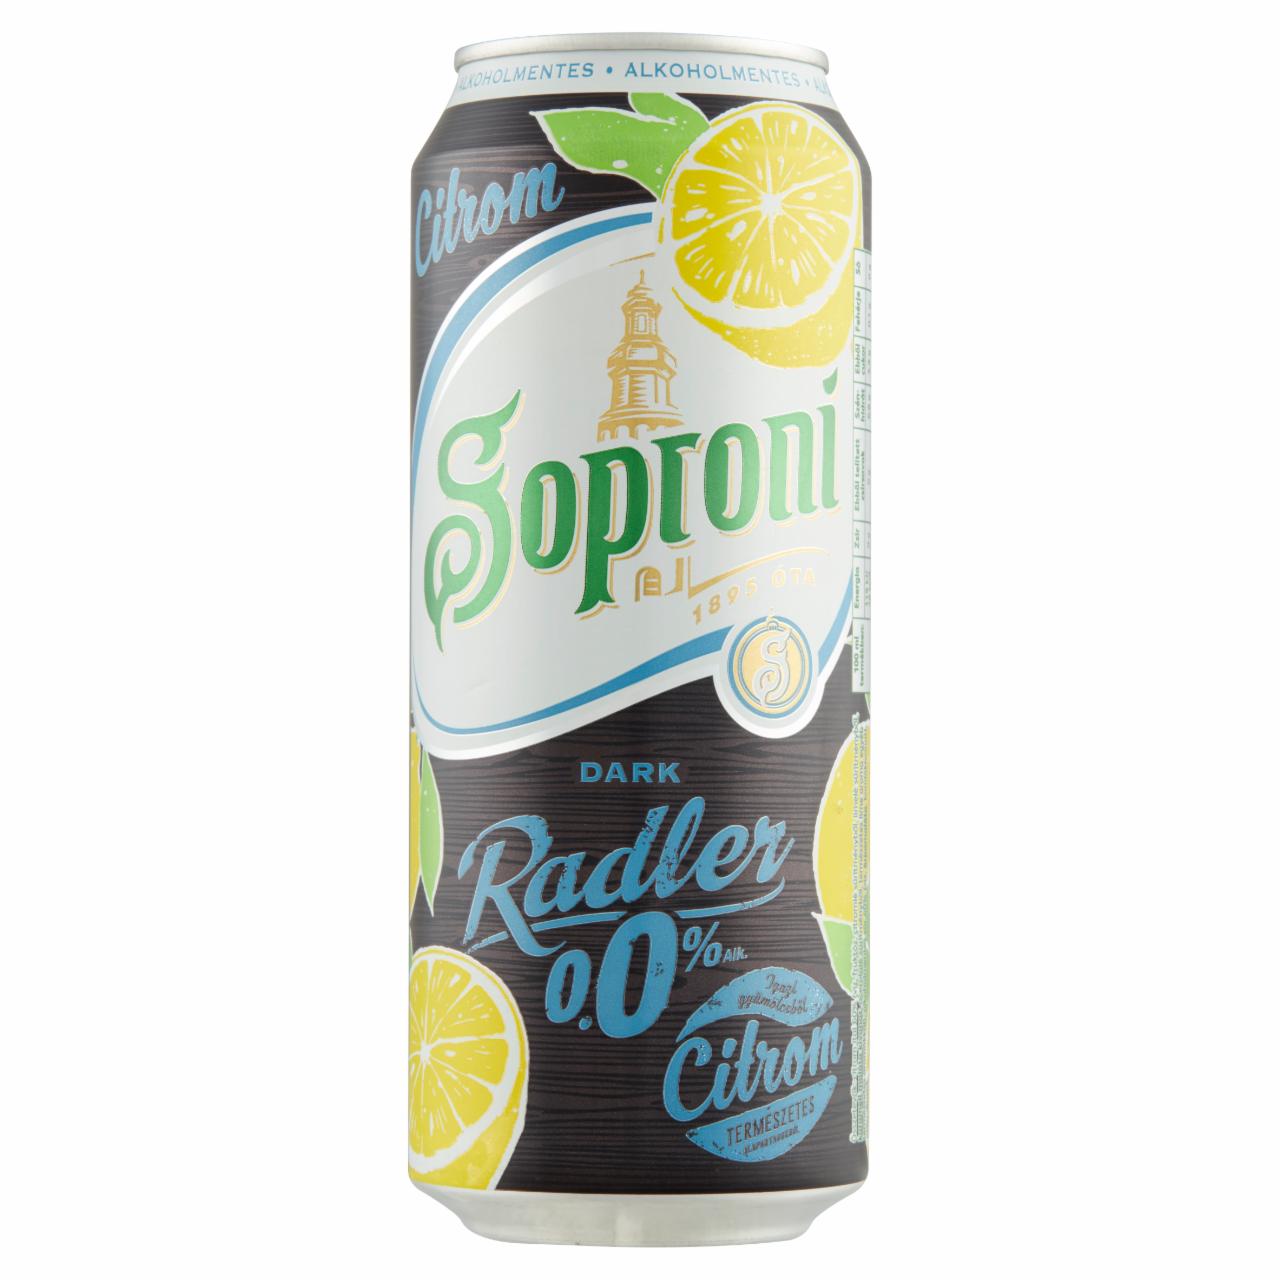 Képek - Soproni Radler Dark citromos alkoholmentes sörital karamell malátával 0,5 l doboz